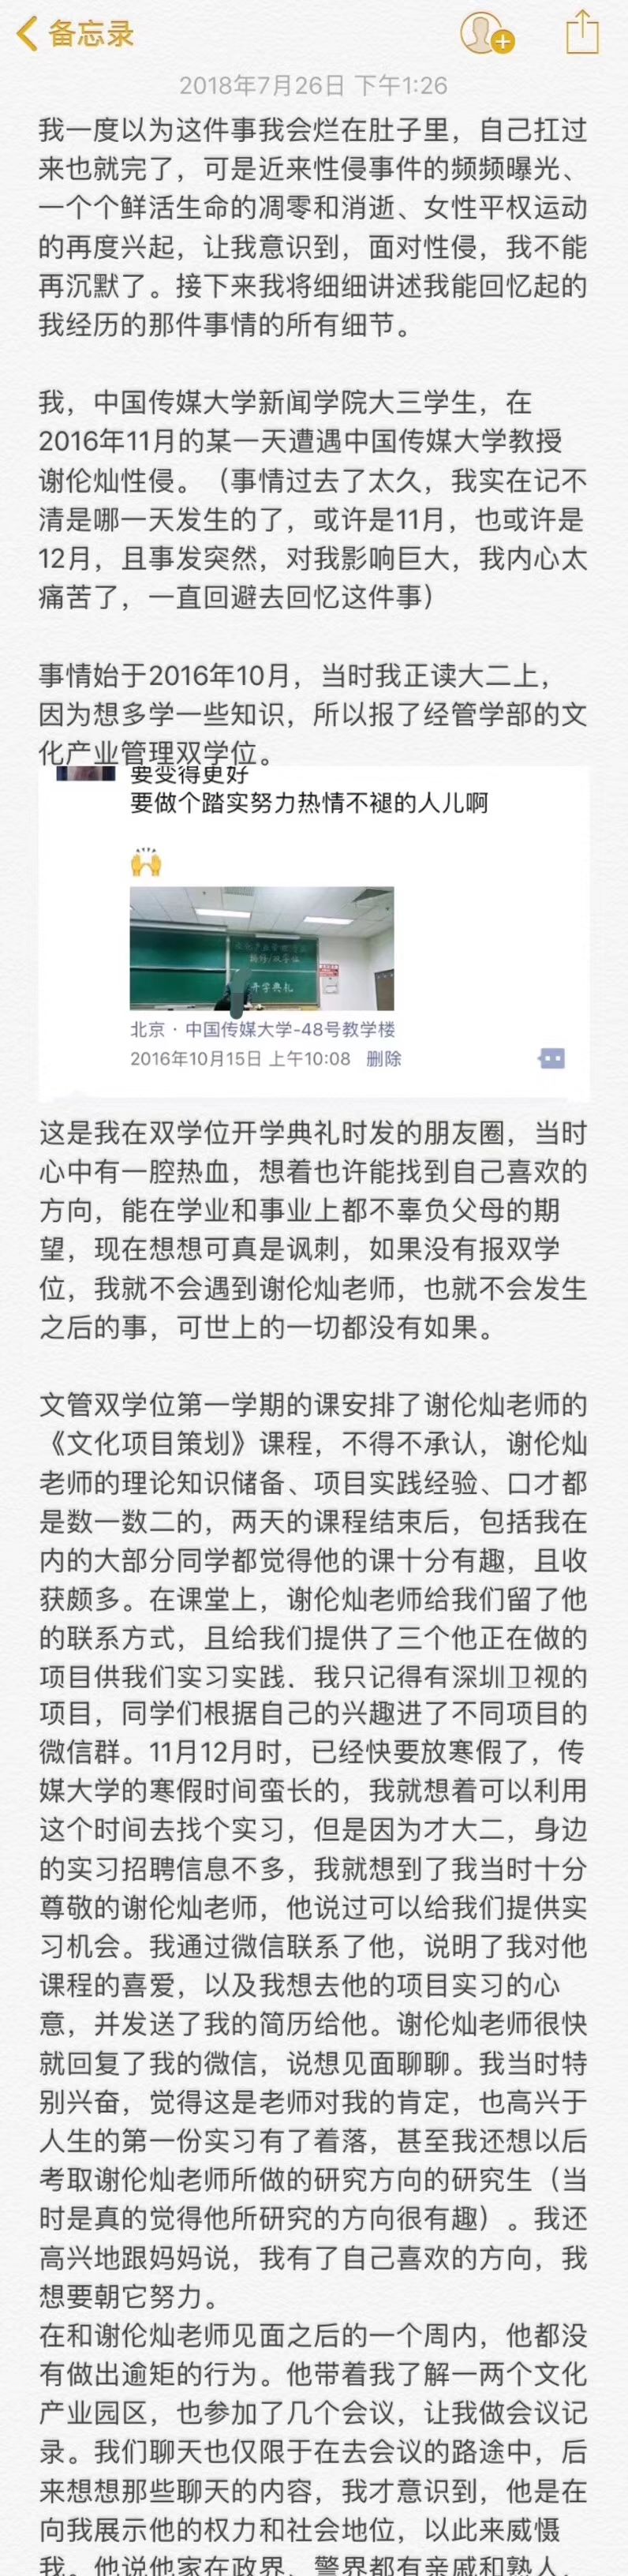 大三女生实名举报中国传媒大学教授谢伦灿性侵